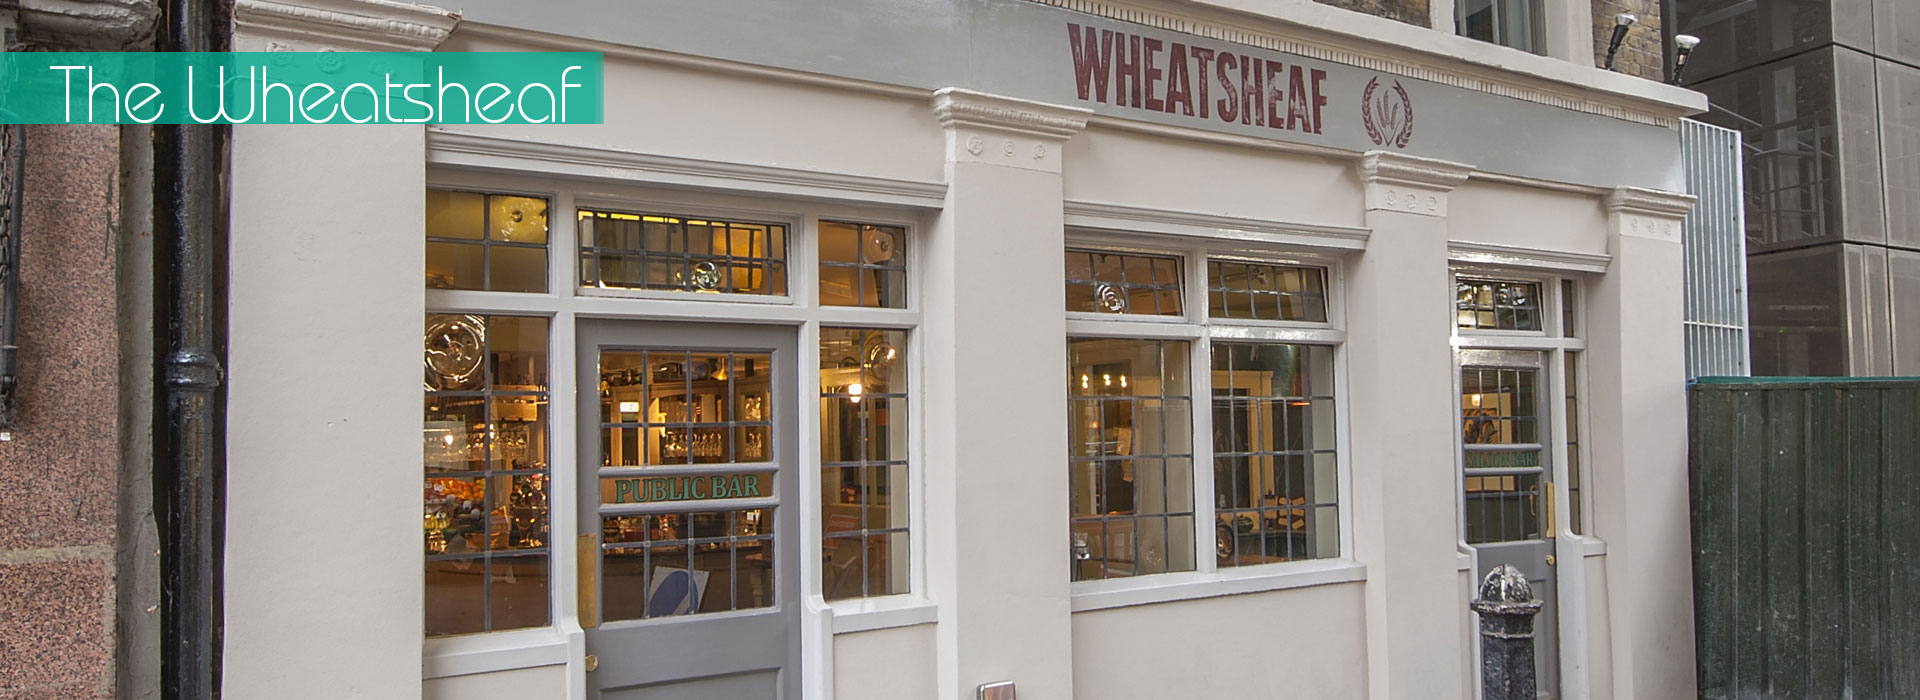 wheatsheaf 1